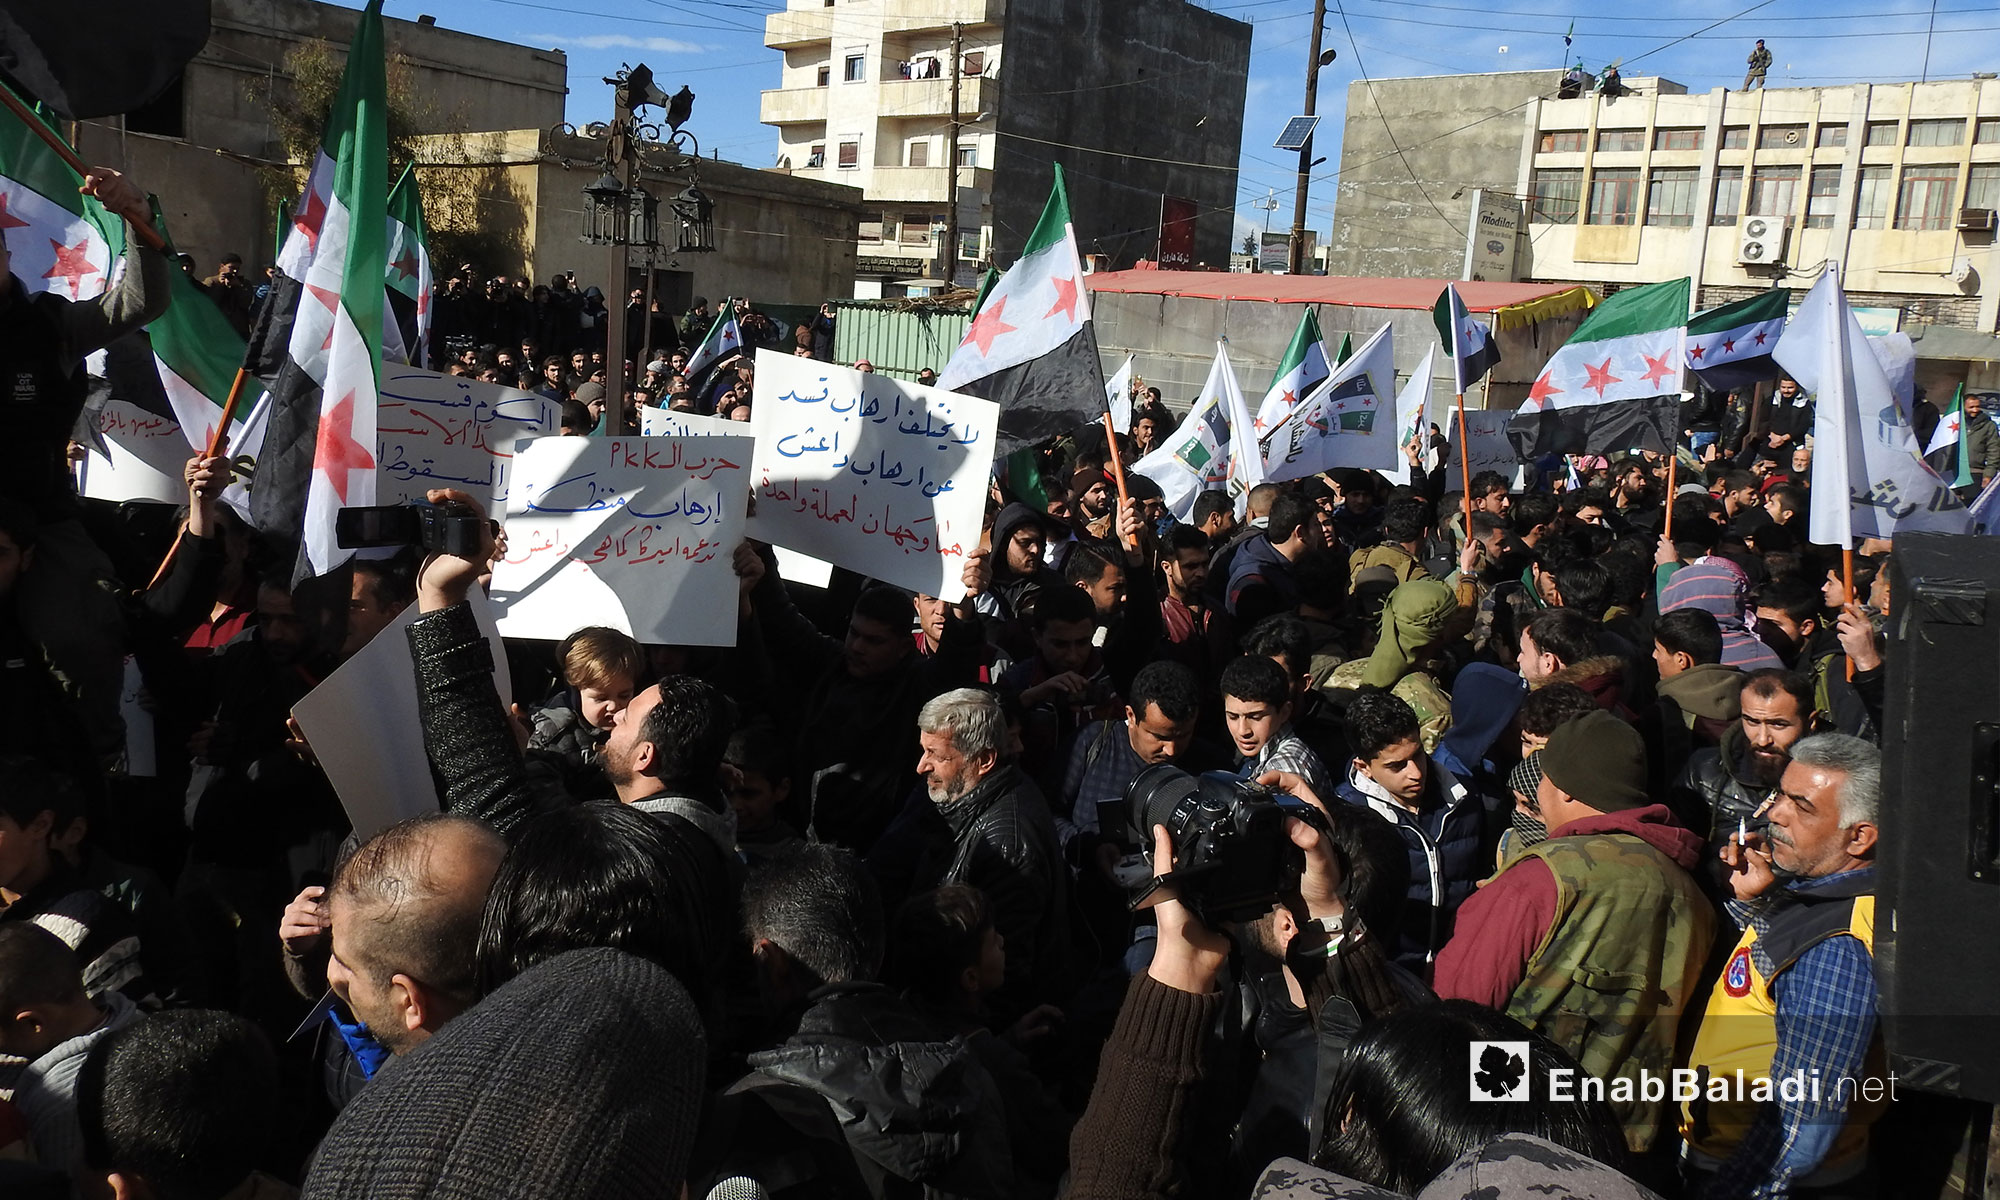 مظاهرة في مدينة اعزاز بريف حلب تأييدا للعمل العسكري من قبل الجيش الحر باتجاه منطقة عفرين بدعم تركي - 19 كانون الثاني 2018 (عنب بلدي)